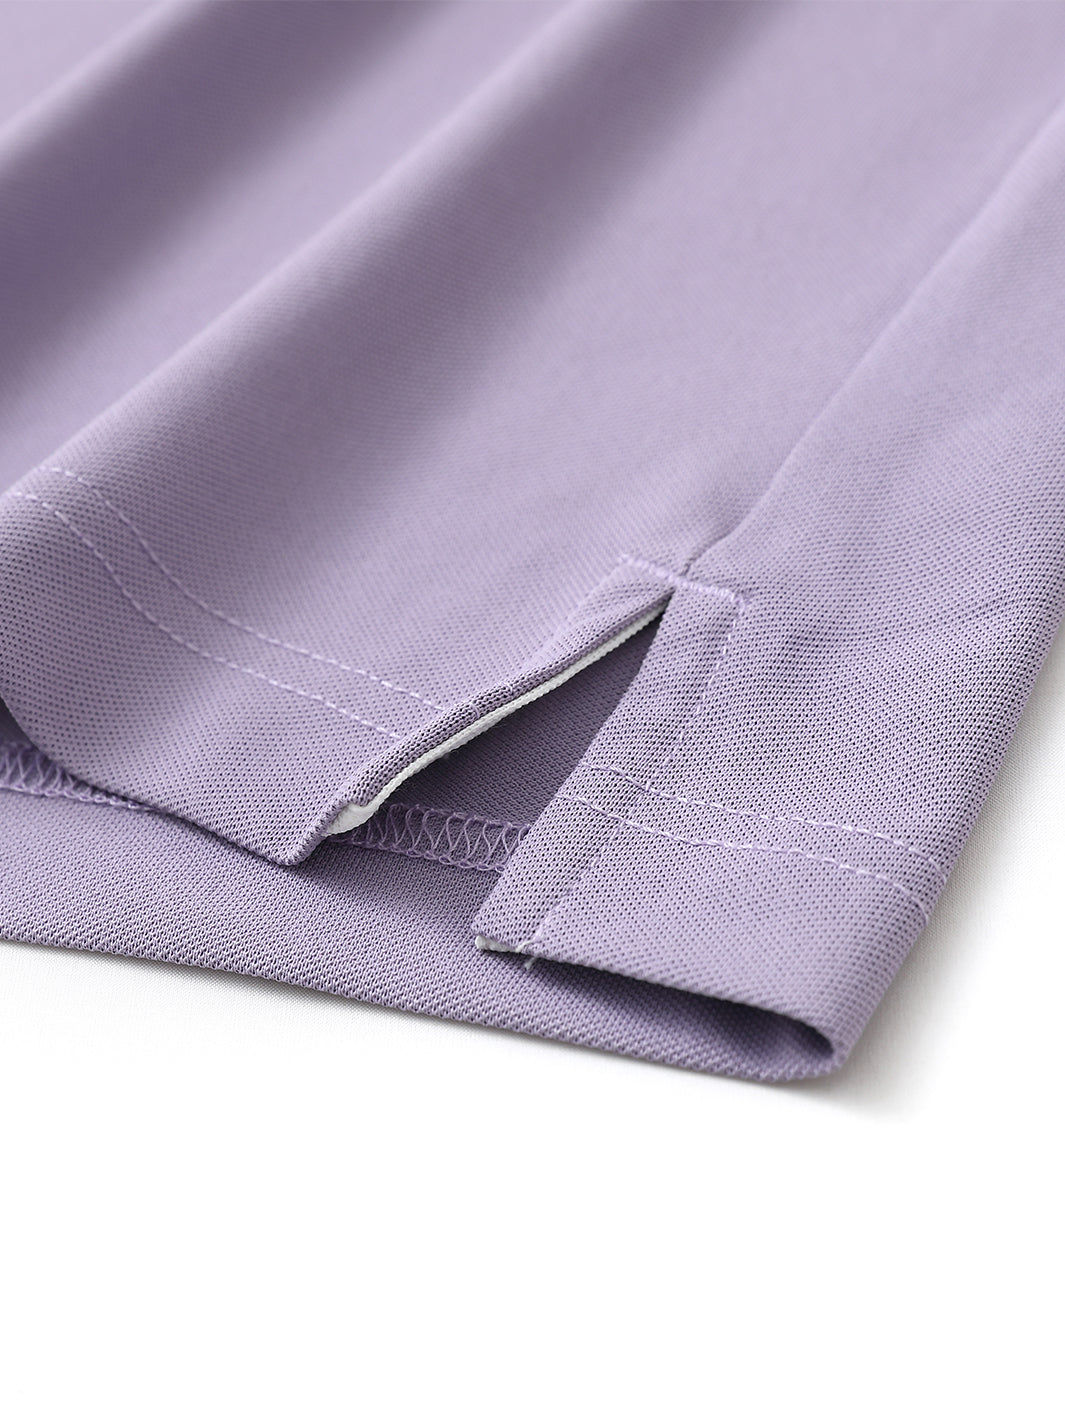 Men's Dry Fit Pique Golf Shirts-Lavender